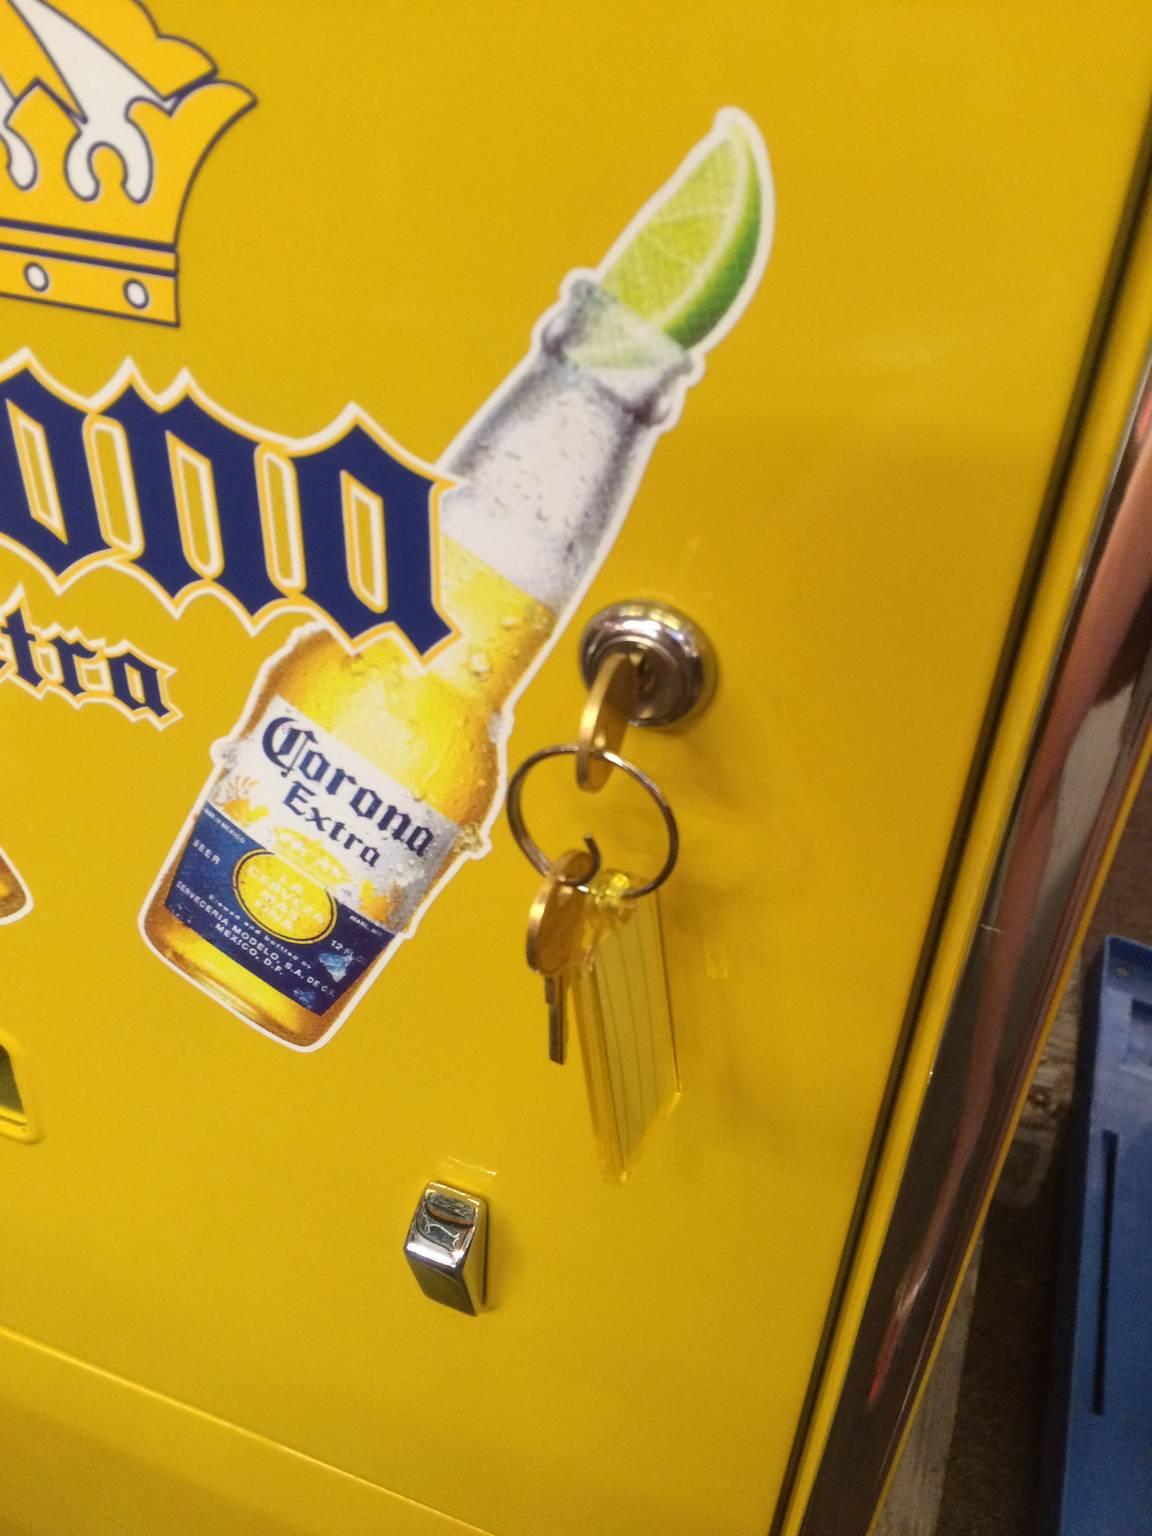 Fully Restored Cavalier 64 Corona Beer Refrigerator 2